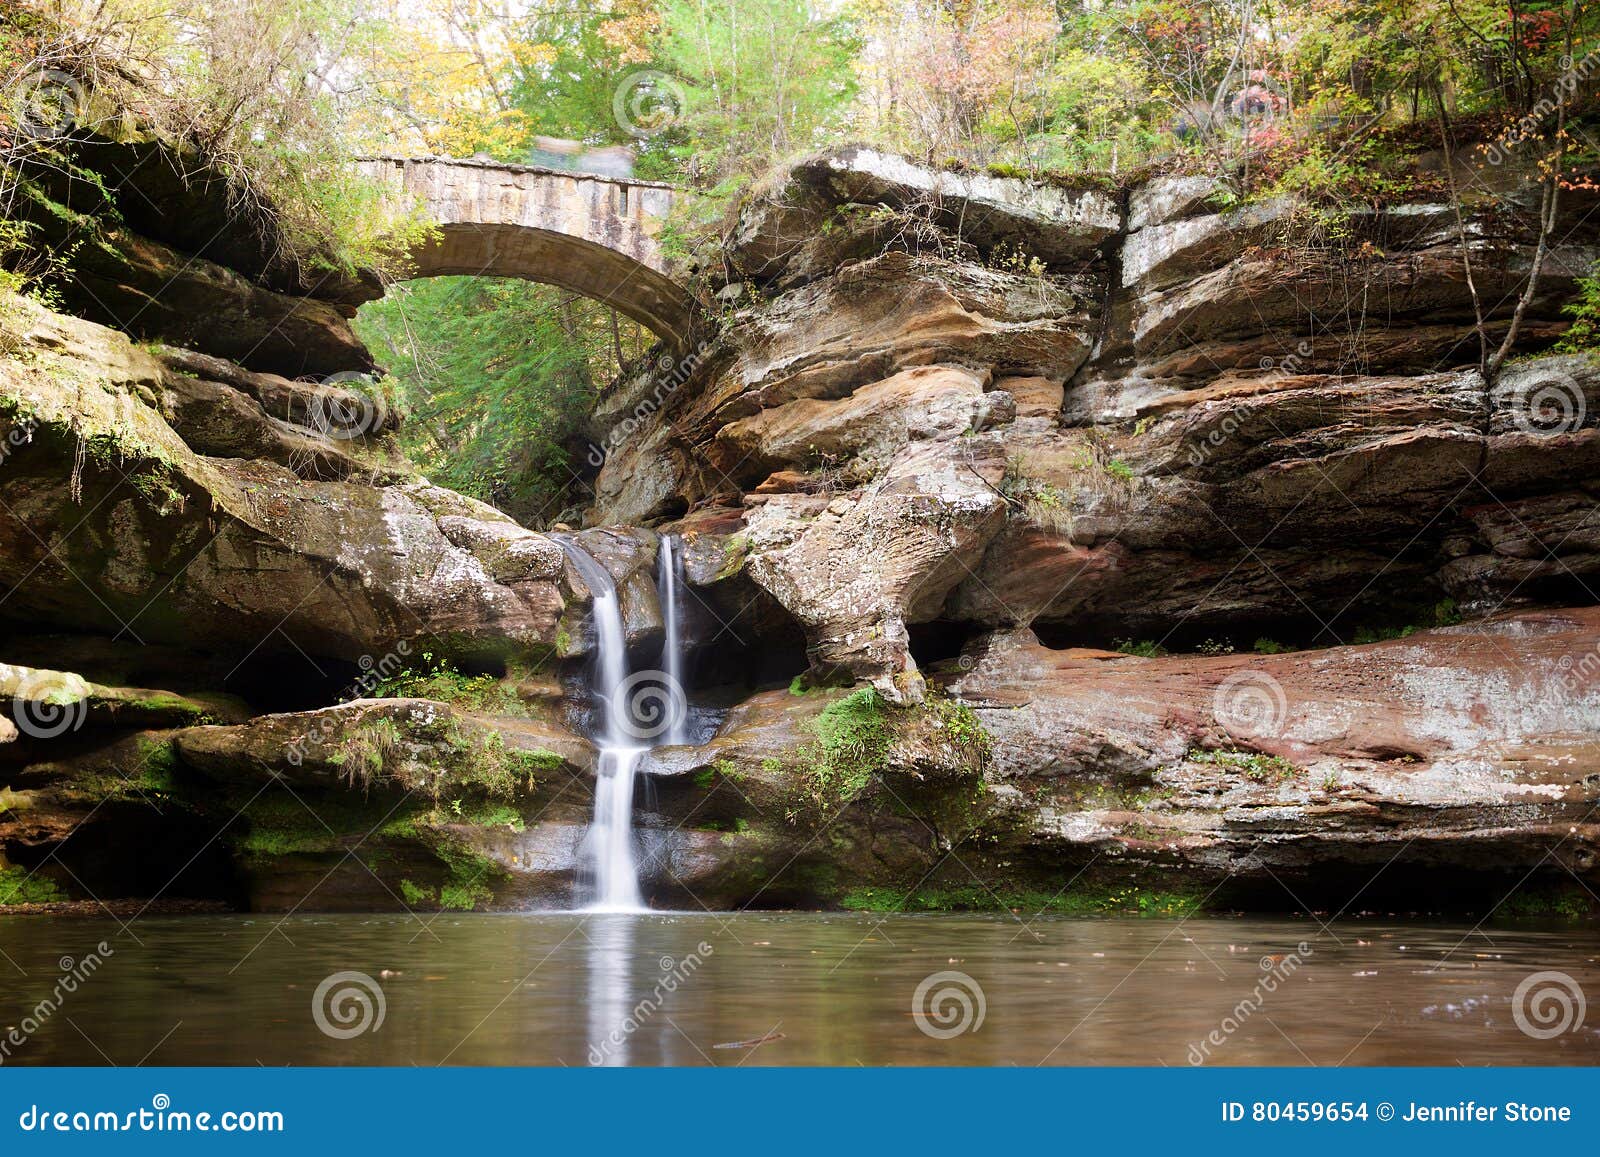 bridge and waterfall in hocking hills state park, ohio